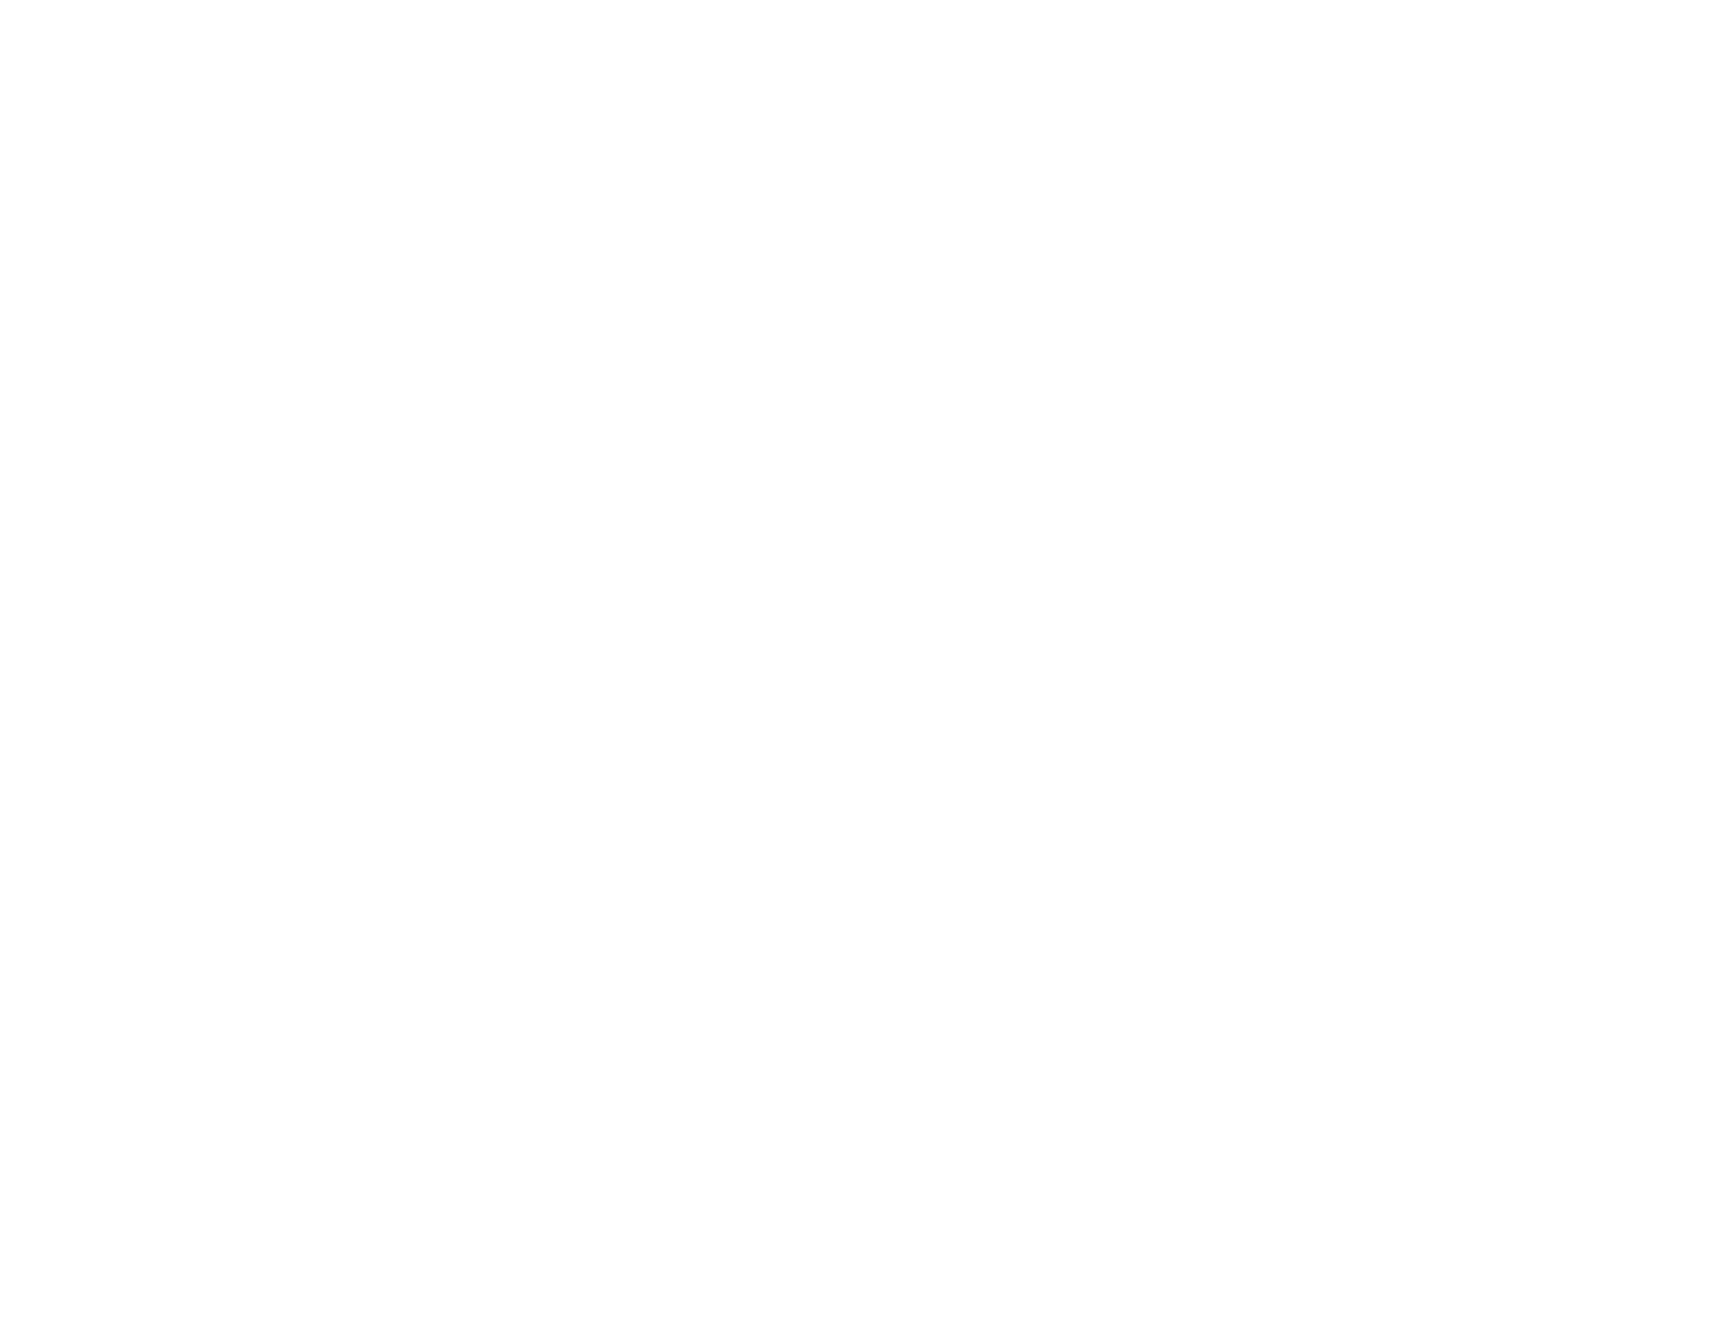 Lighter For Longer